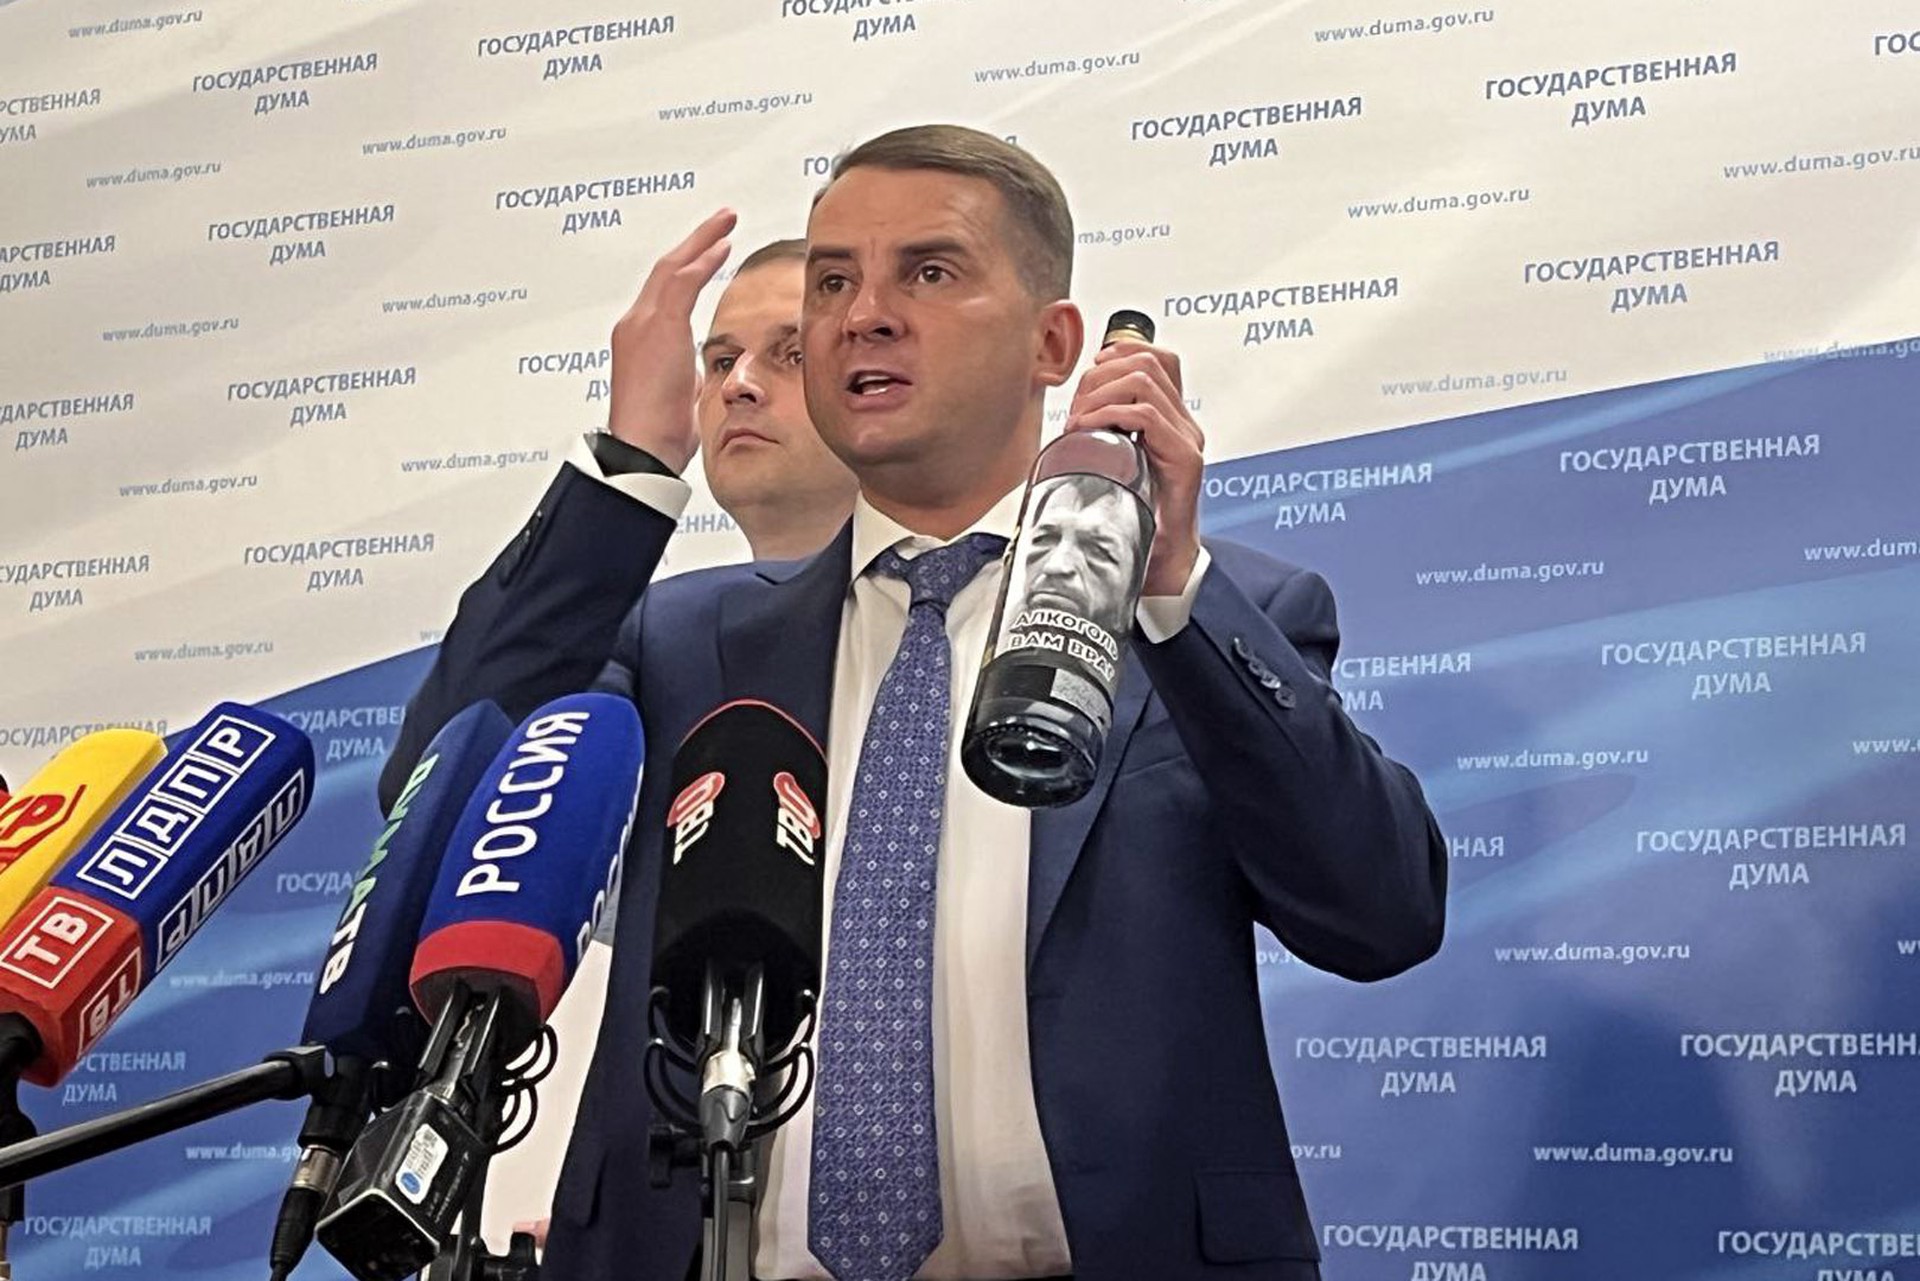 «Деградирующий пьяница»: почему депутаты Госдумы принесли на заседание бутылку водки